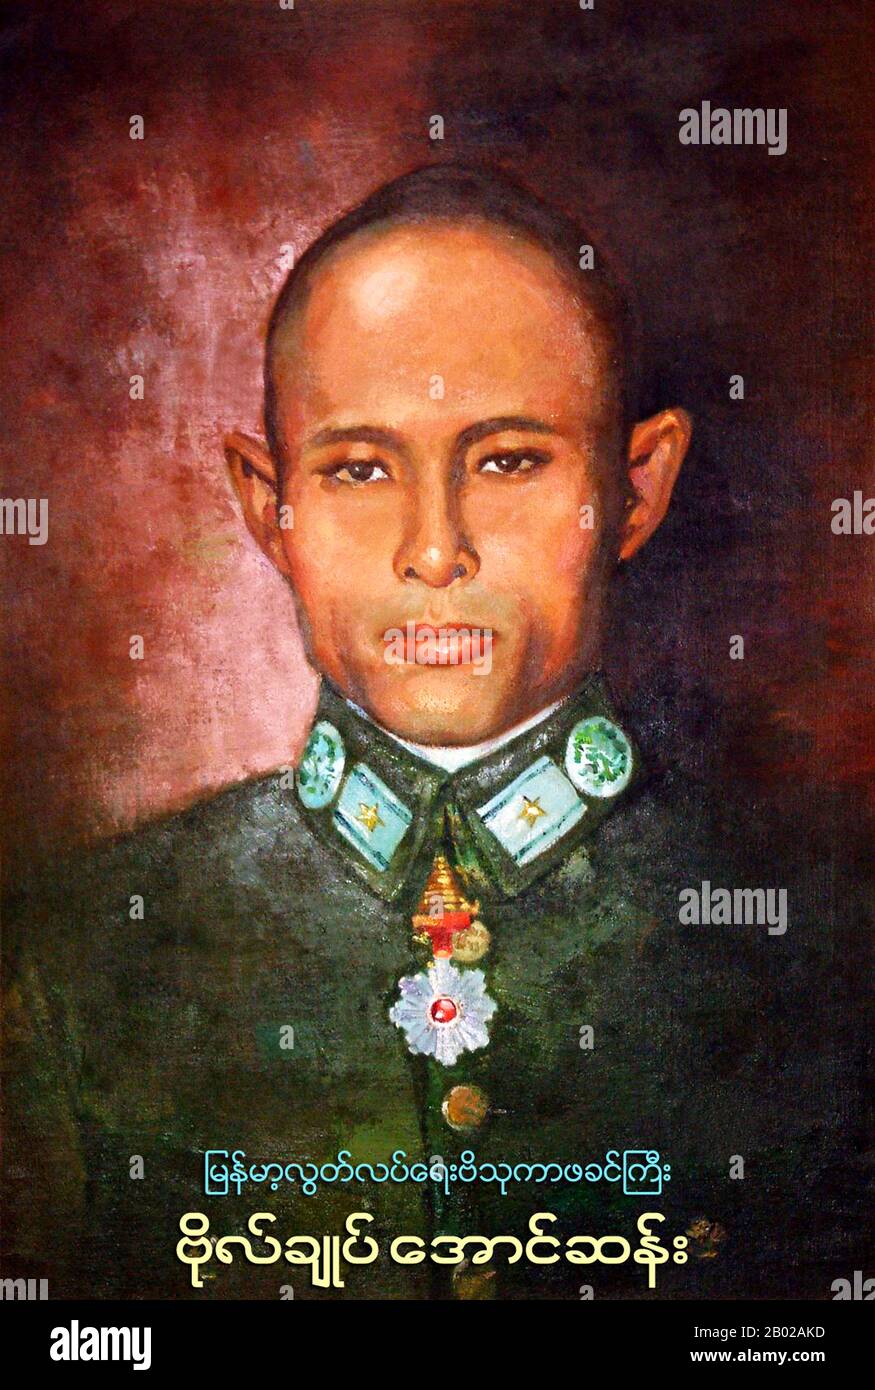 Bogyoke (General) Aung San (13. Februar 1915 - 19. Juli 1947) war ein birmanischer Revolutionär, Nationalist und Gründer der modernen birmanischen Armee, der Tatmadaw. Er war Gründer der Kommunistischen Partei Burmas und trug maßgeblich dazu bei, die Unabhängigkeit Birmas von der britischen Kolonialherrschaft zu erreichen, wurde aber sechs Monate vor seiner endgültigen Leistung ermordet. Er ist als führender Architekt der Unabhängigkeit und Gründer der Union von Birma anerkannt. Aung San war Vater des Friedensnobelpreisträgers und Oppositionsführers Aung San Suu Kyi. Stockfoto